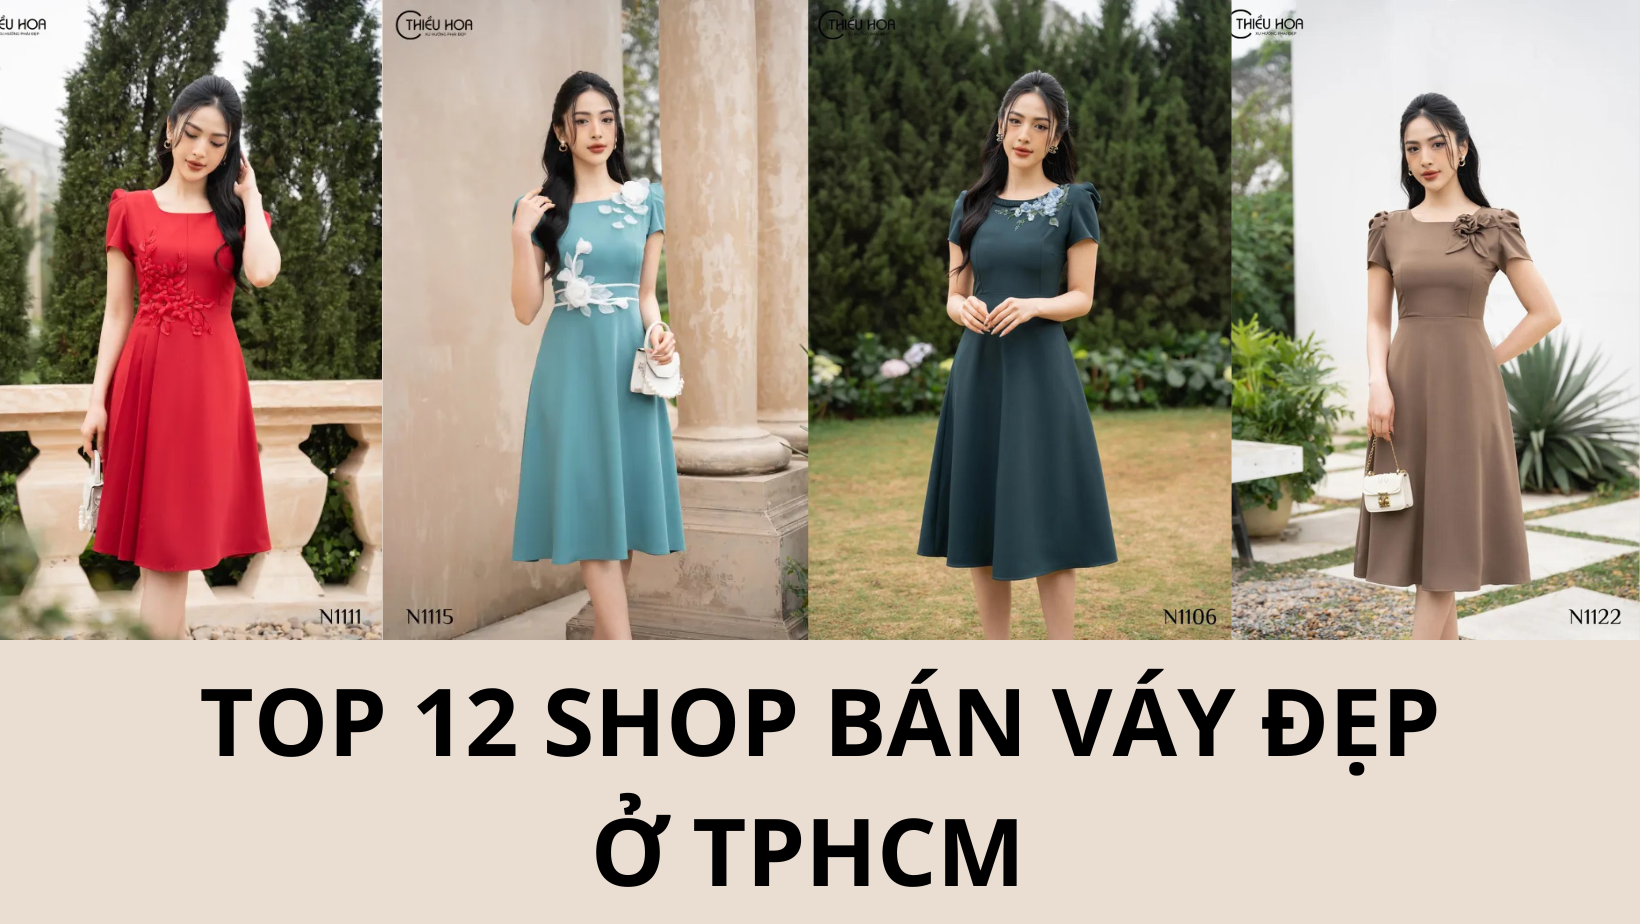 Top 12 shop bán váy đẹp ở TPHCM bạn nên ghé qua thử